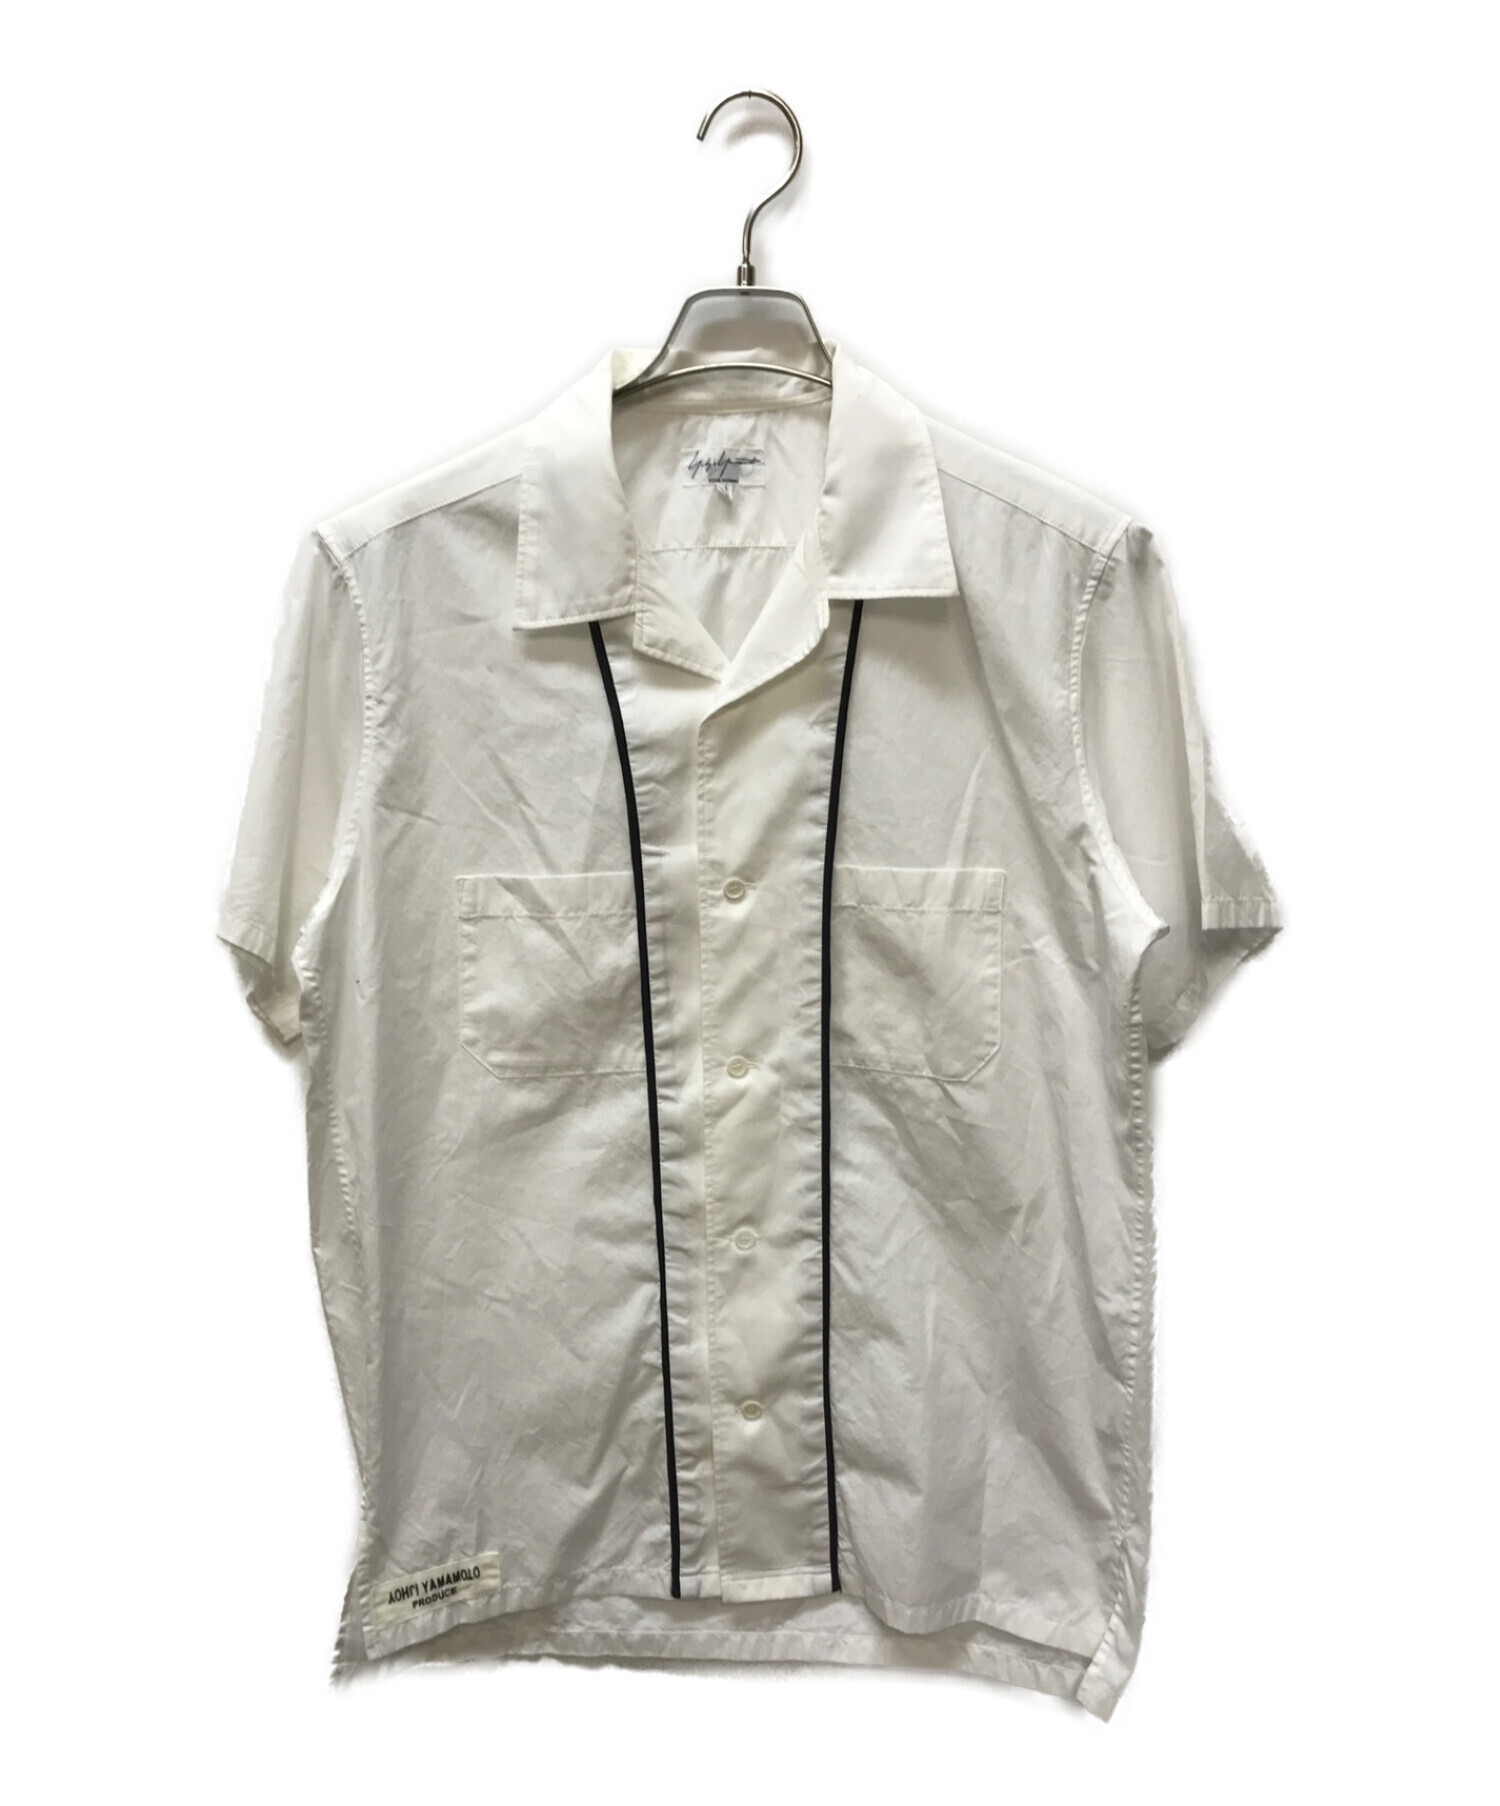 Yohji Yamamoto pour homme (ヨウジヤマモト プールオム) オープンカラーシャツ ホワイト サイズ:3